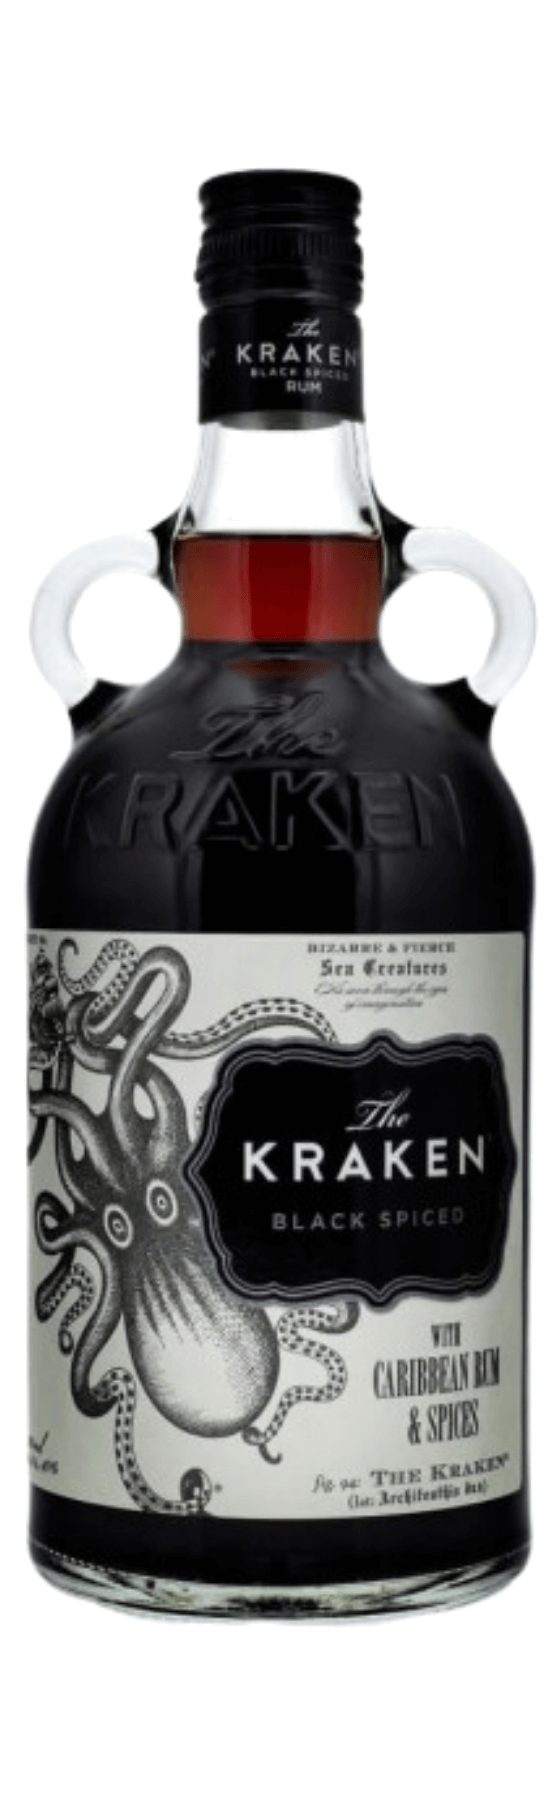 The Kraken Black Spiced